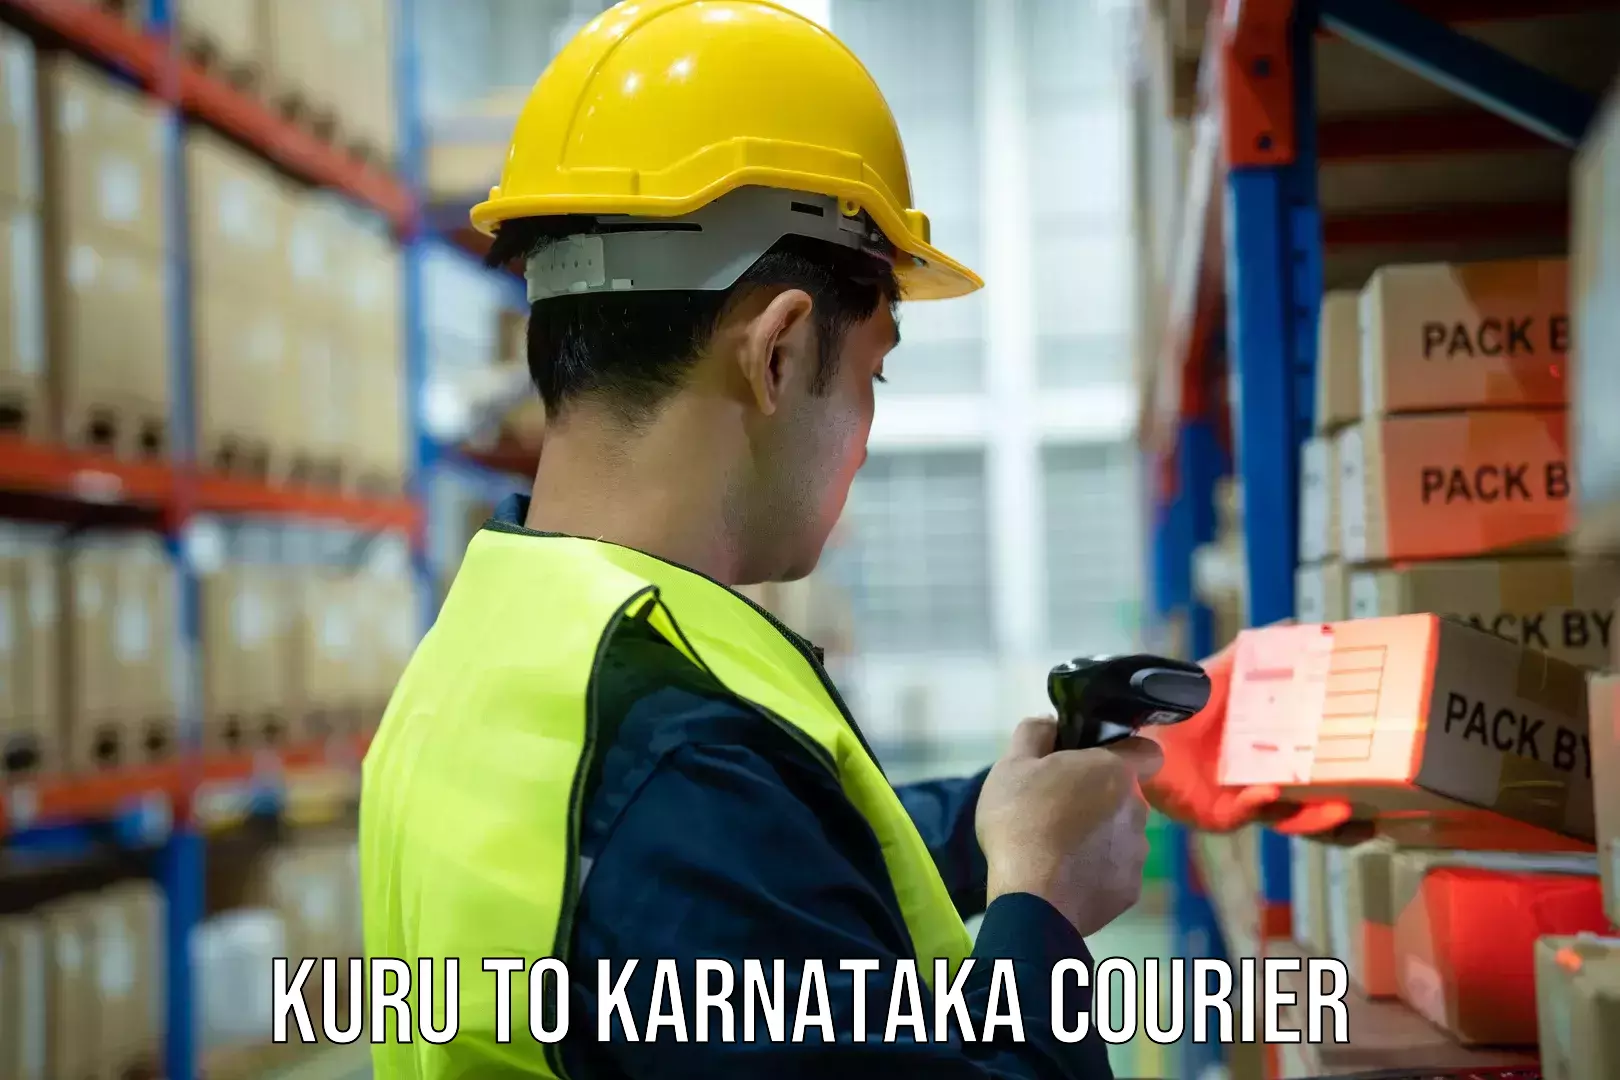 Easy access courier services Kuru to Tikota